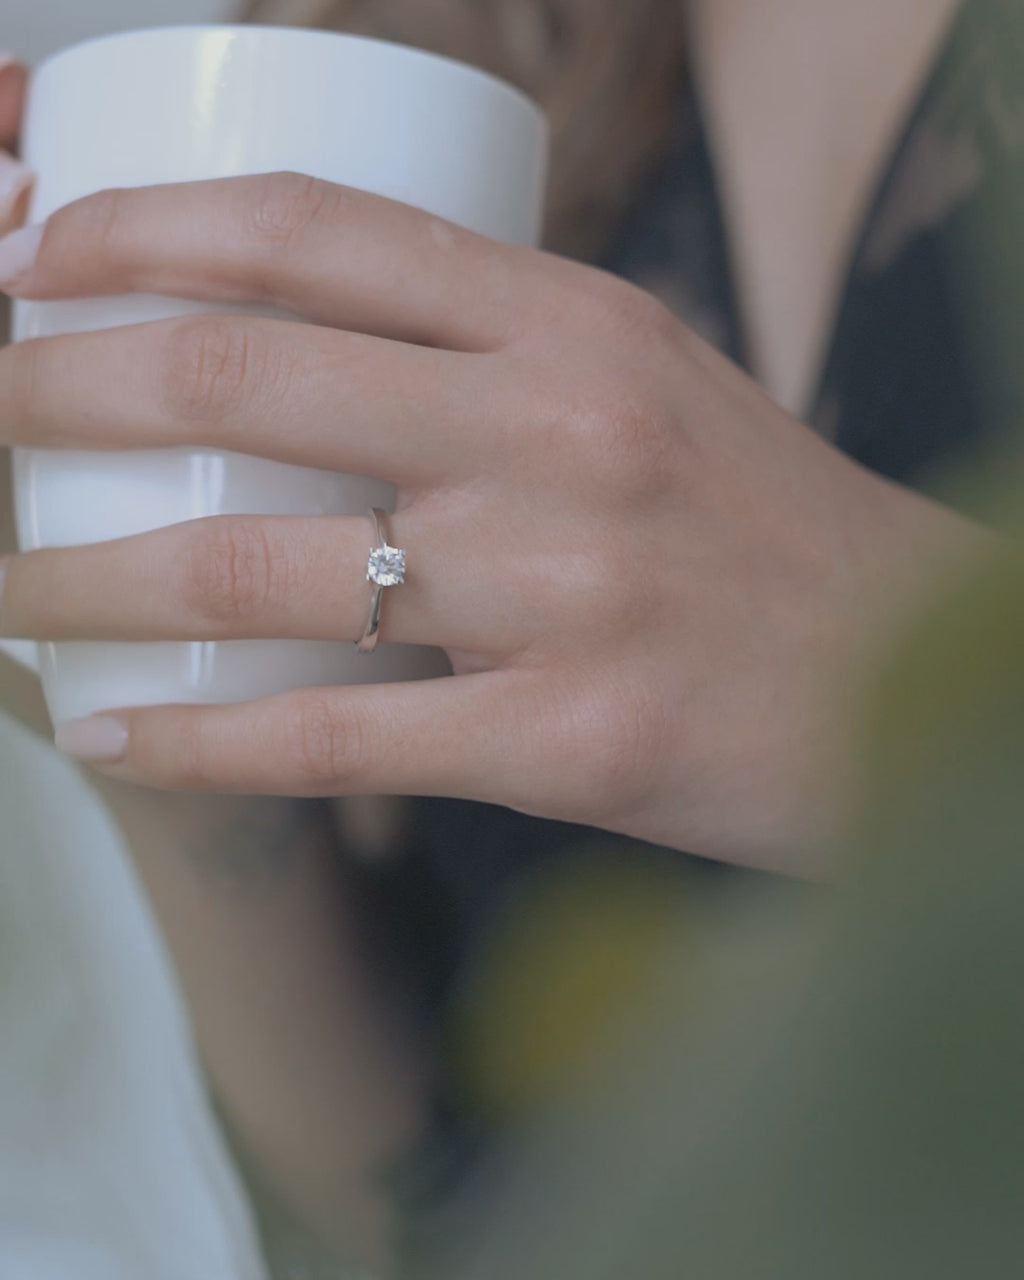 Λευκόχρυσο μονόπετρο με διαμάντι σε καστόνι σχήματος "V" και λεπτομέρεια καρδιάς φορεμένο σε γυναικείο χέρι.